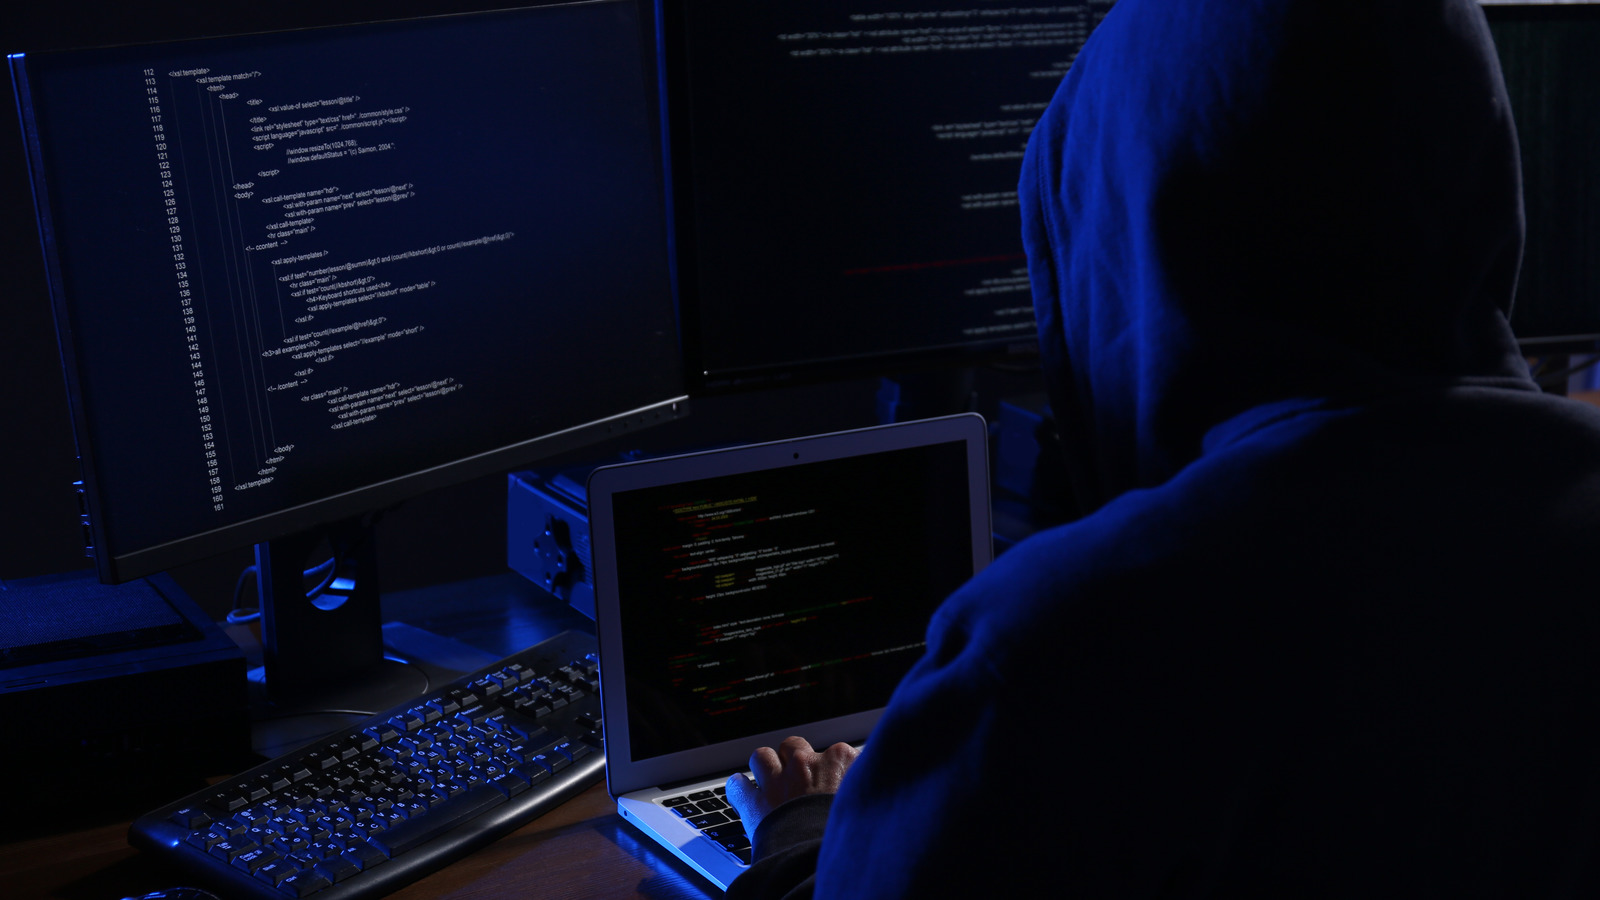 ΗΠΑ: Χάκερ παραβίασαν το δίκτυο υπολογιστών του FBI